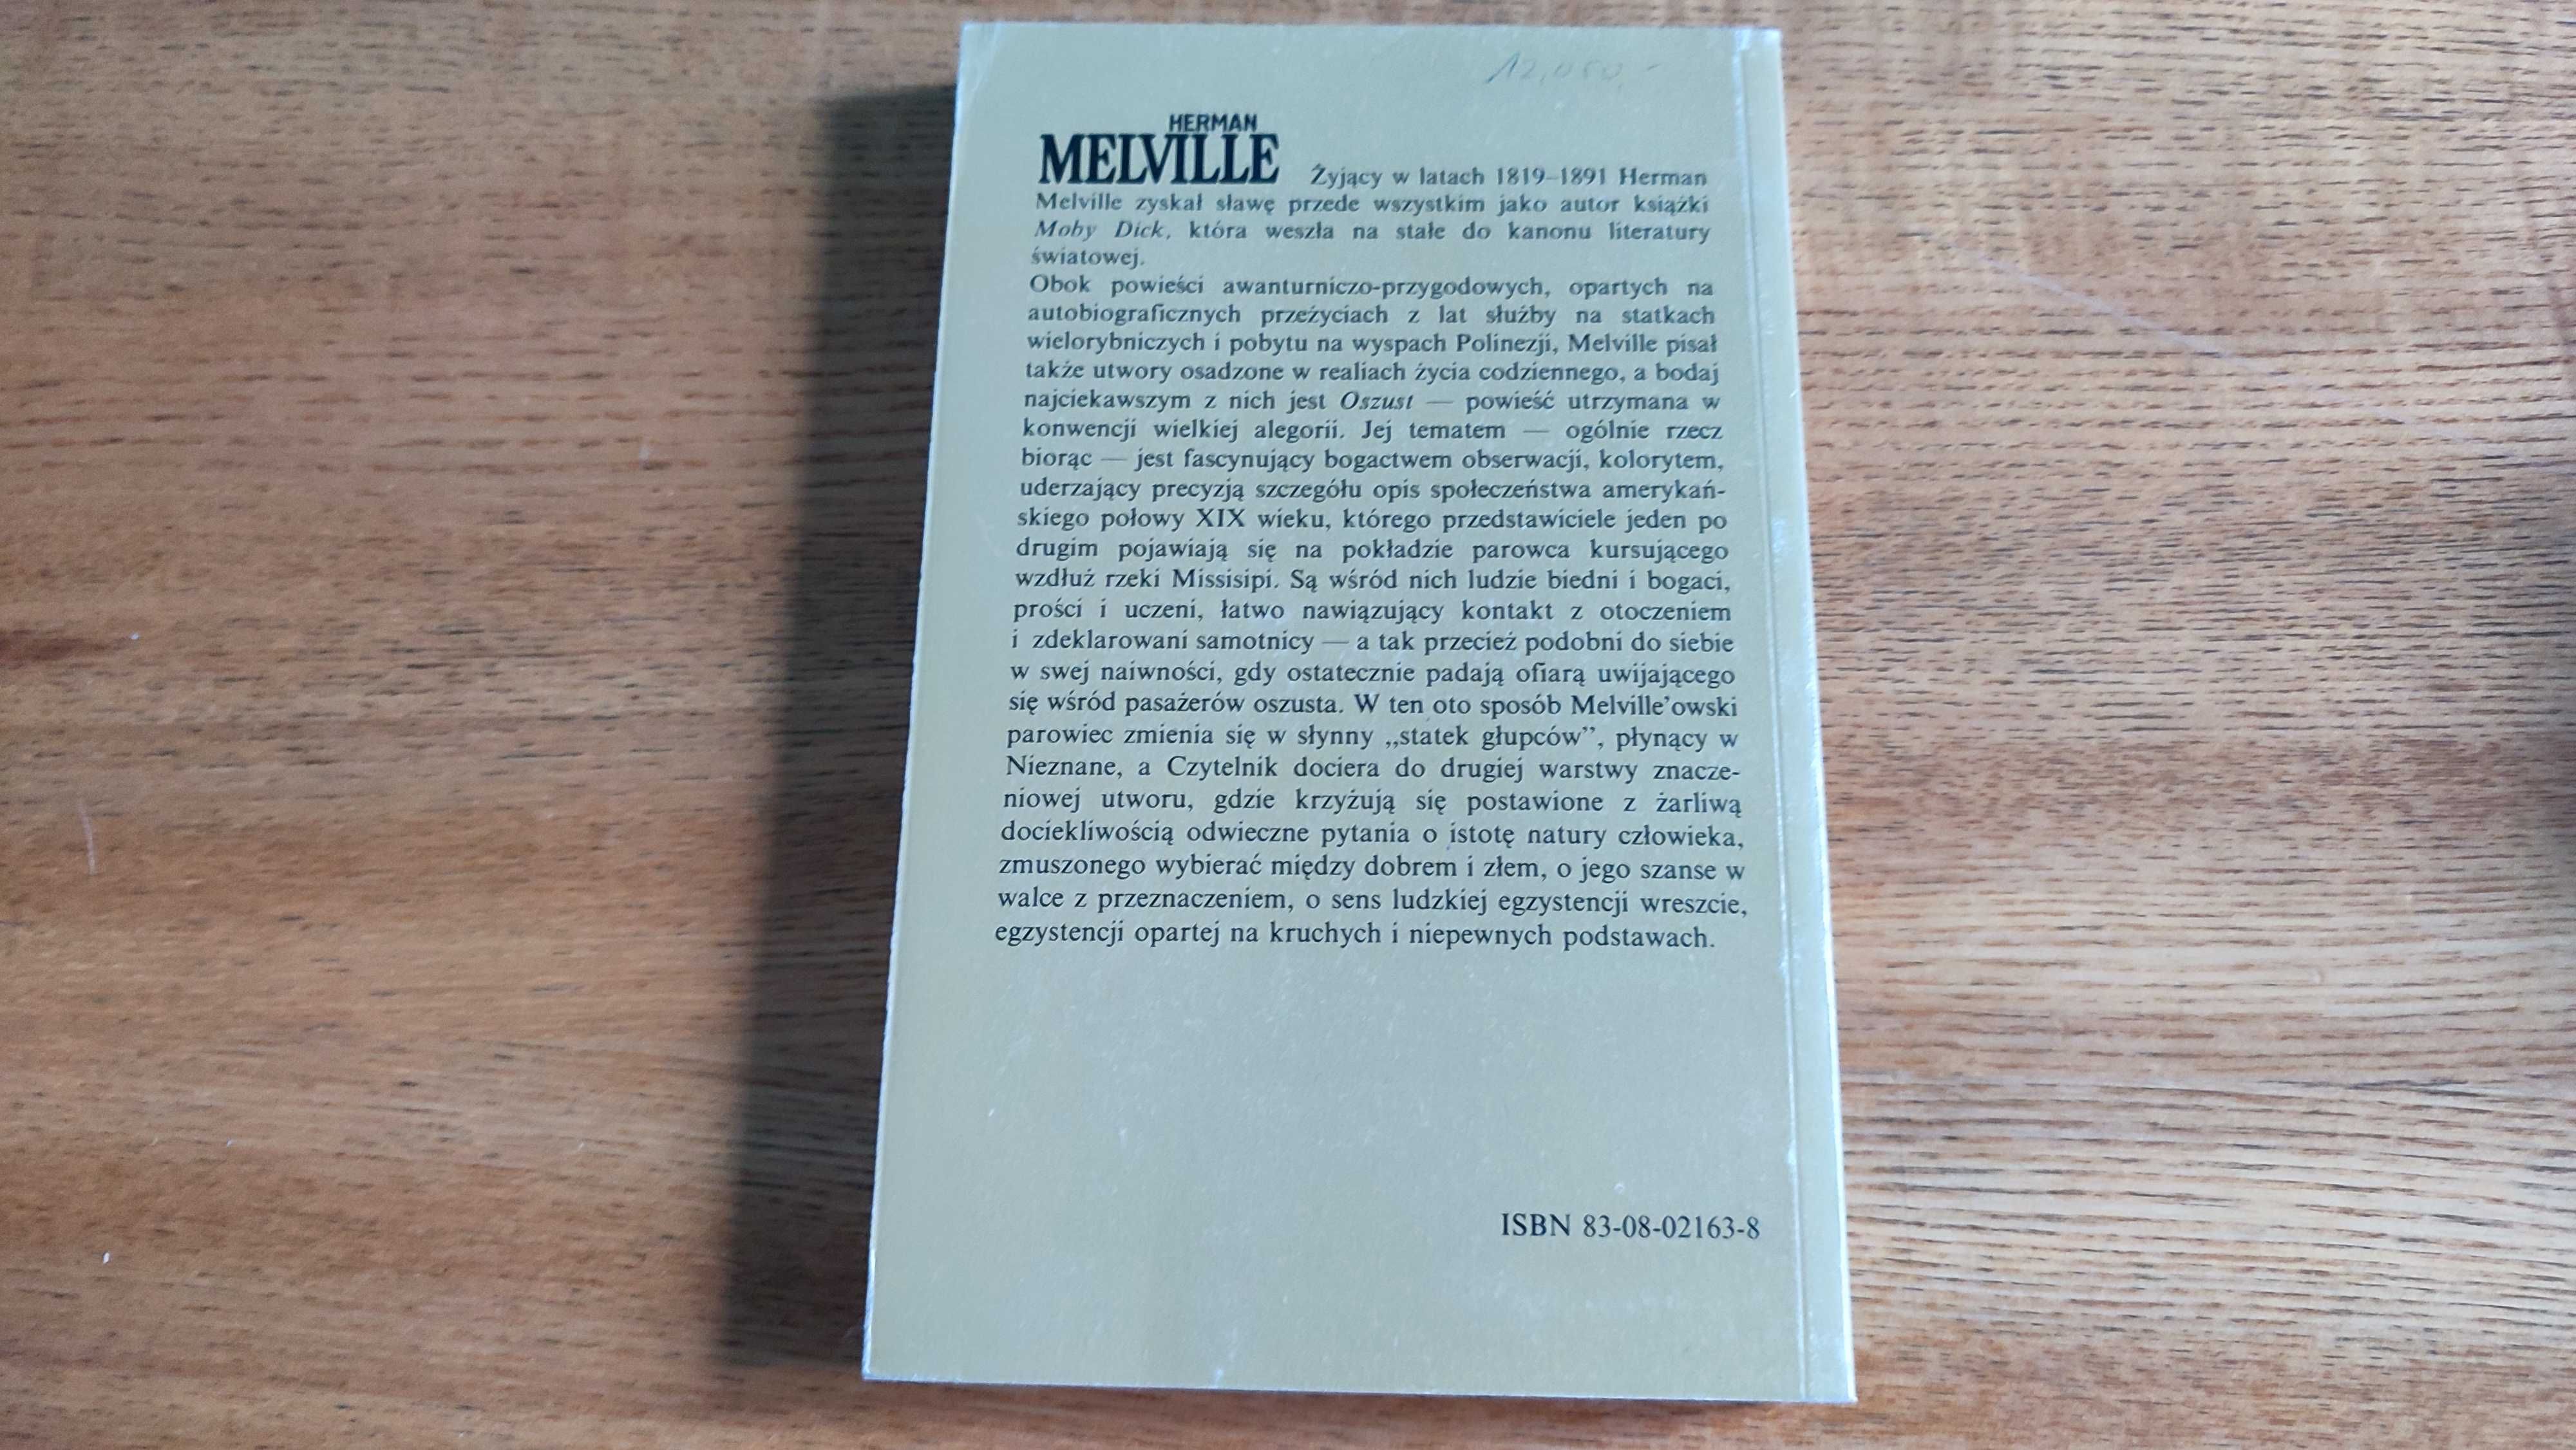 Oszust Herman Melville